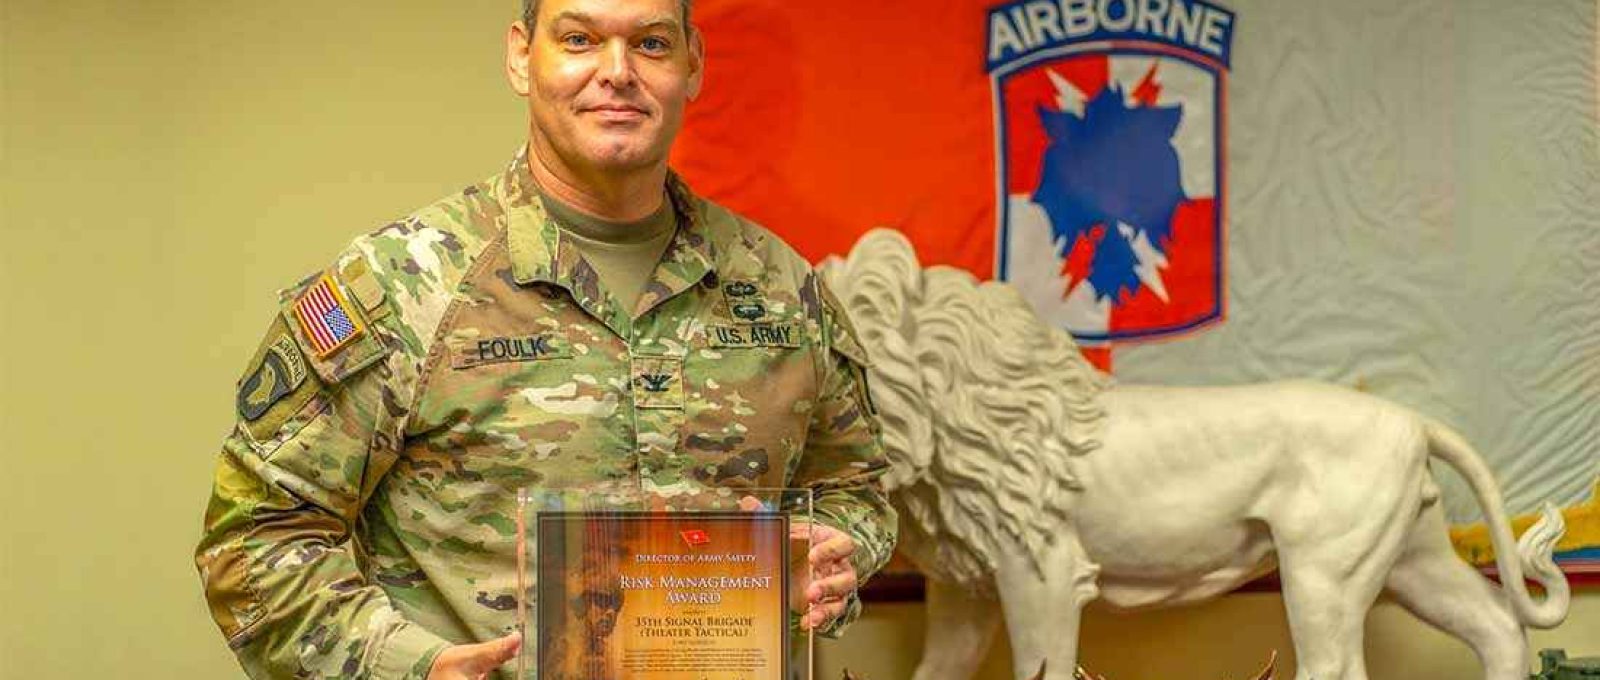 O coronel Matthew Foulk, do US Army, foi destituído como comandante da 35ª Brigada de Sinaleiros em 17 de maio de 2021, após investigação por má conduta (Foto: US Army).